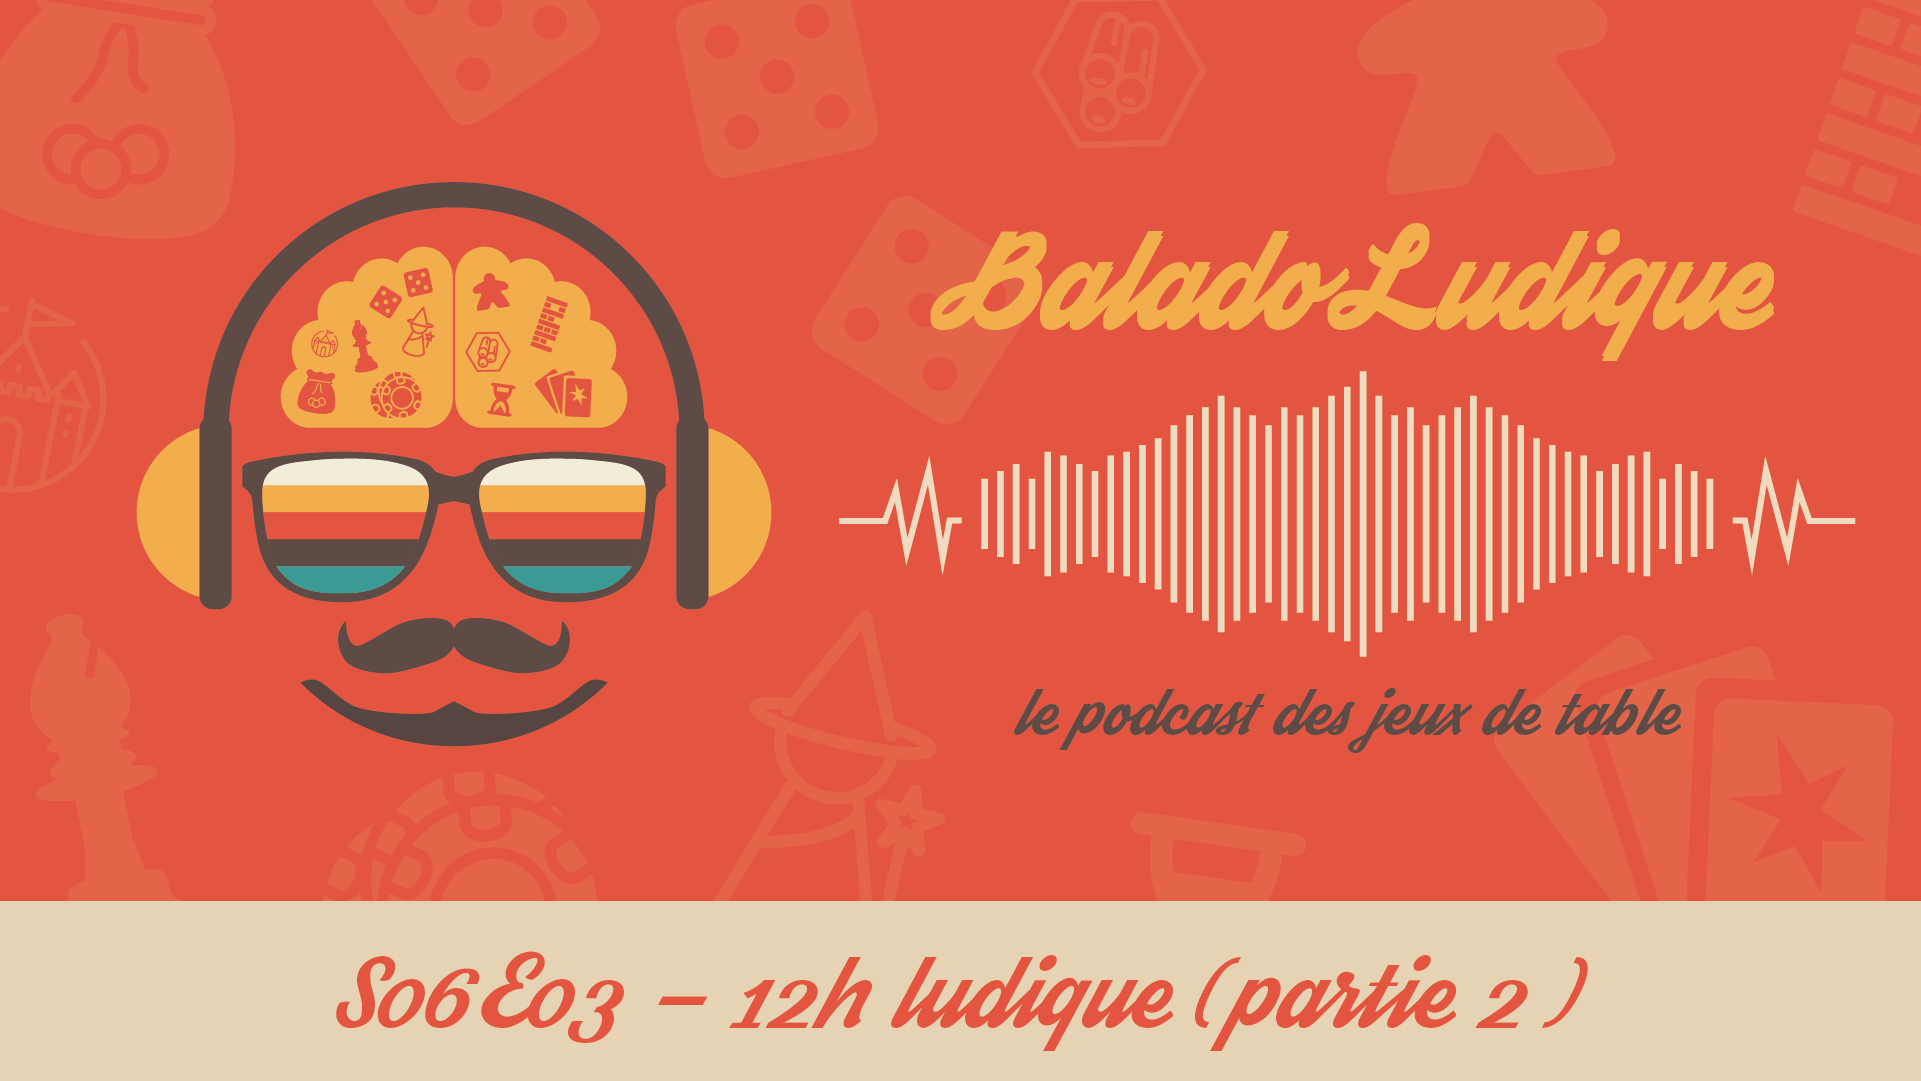 12h Ludique (partie 2) - BaladoLudique - s06-e03